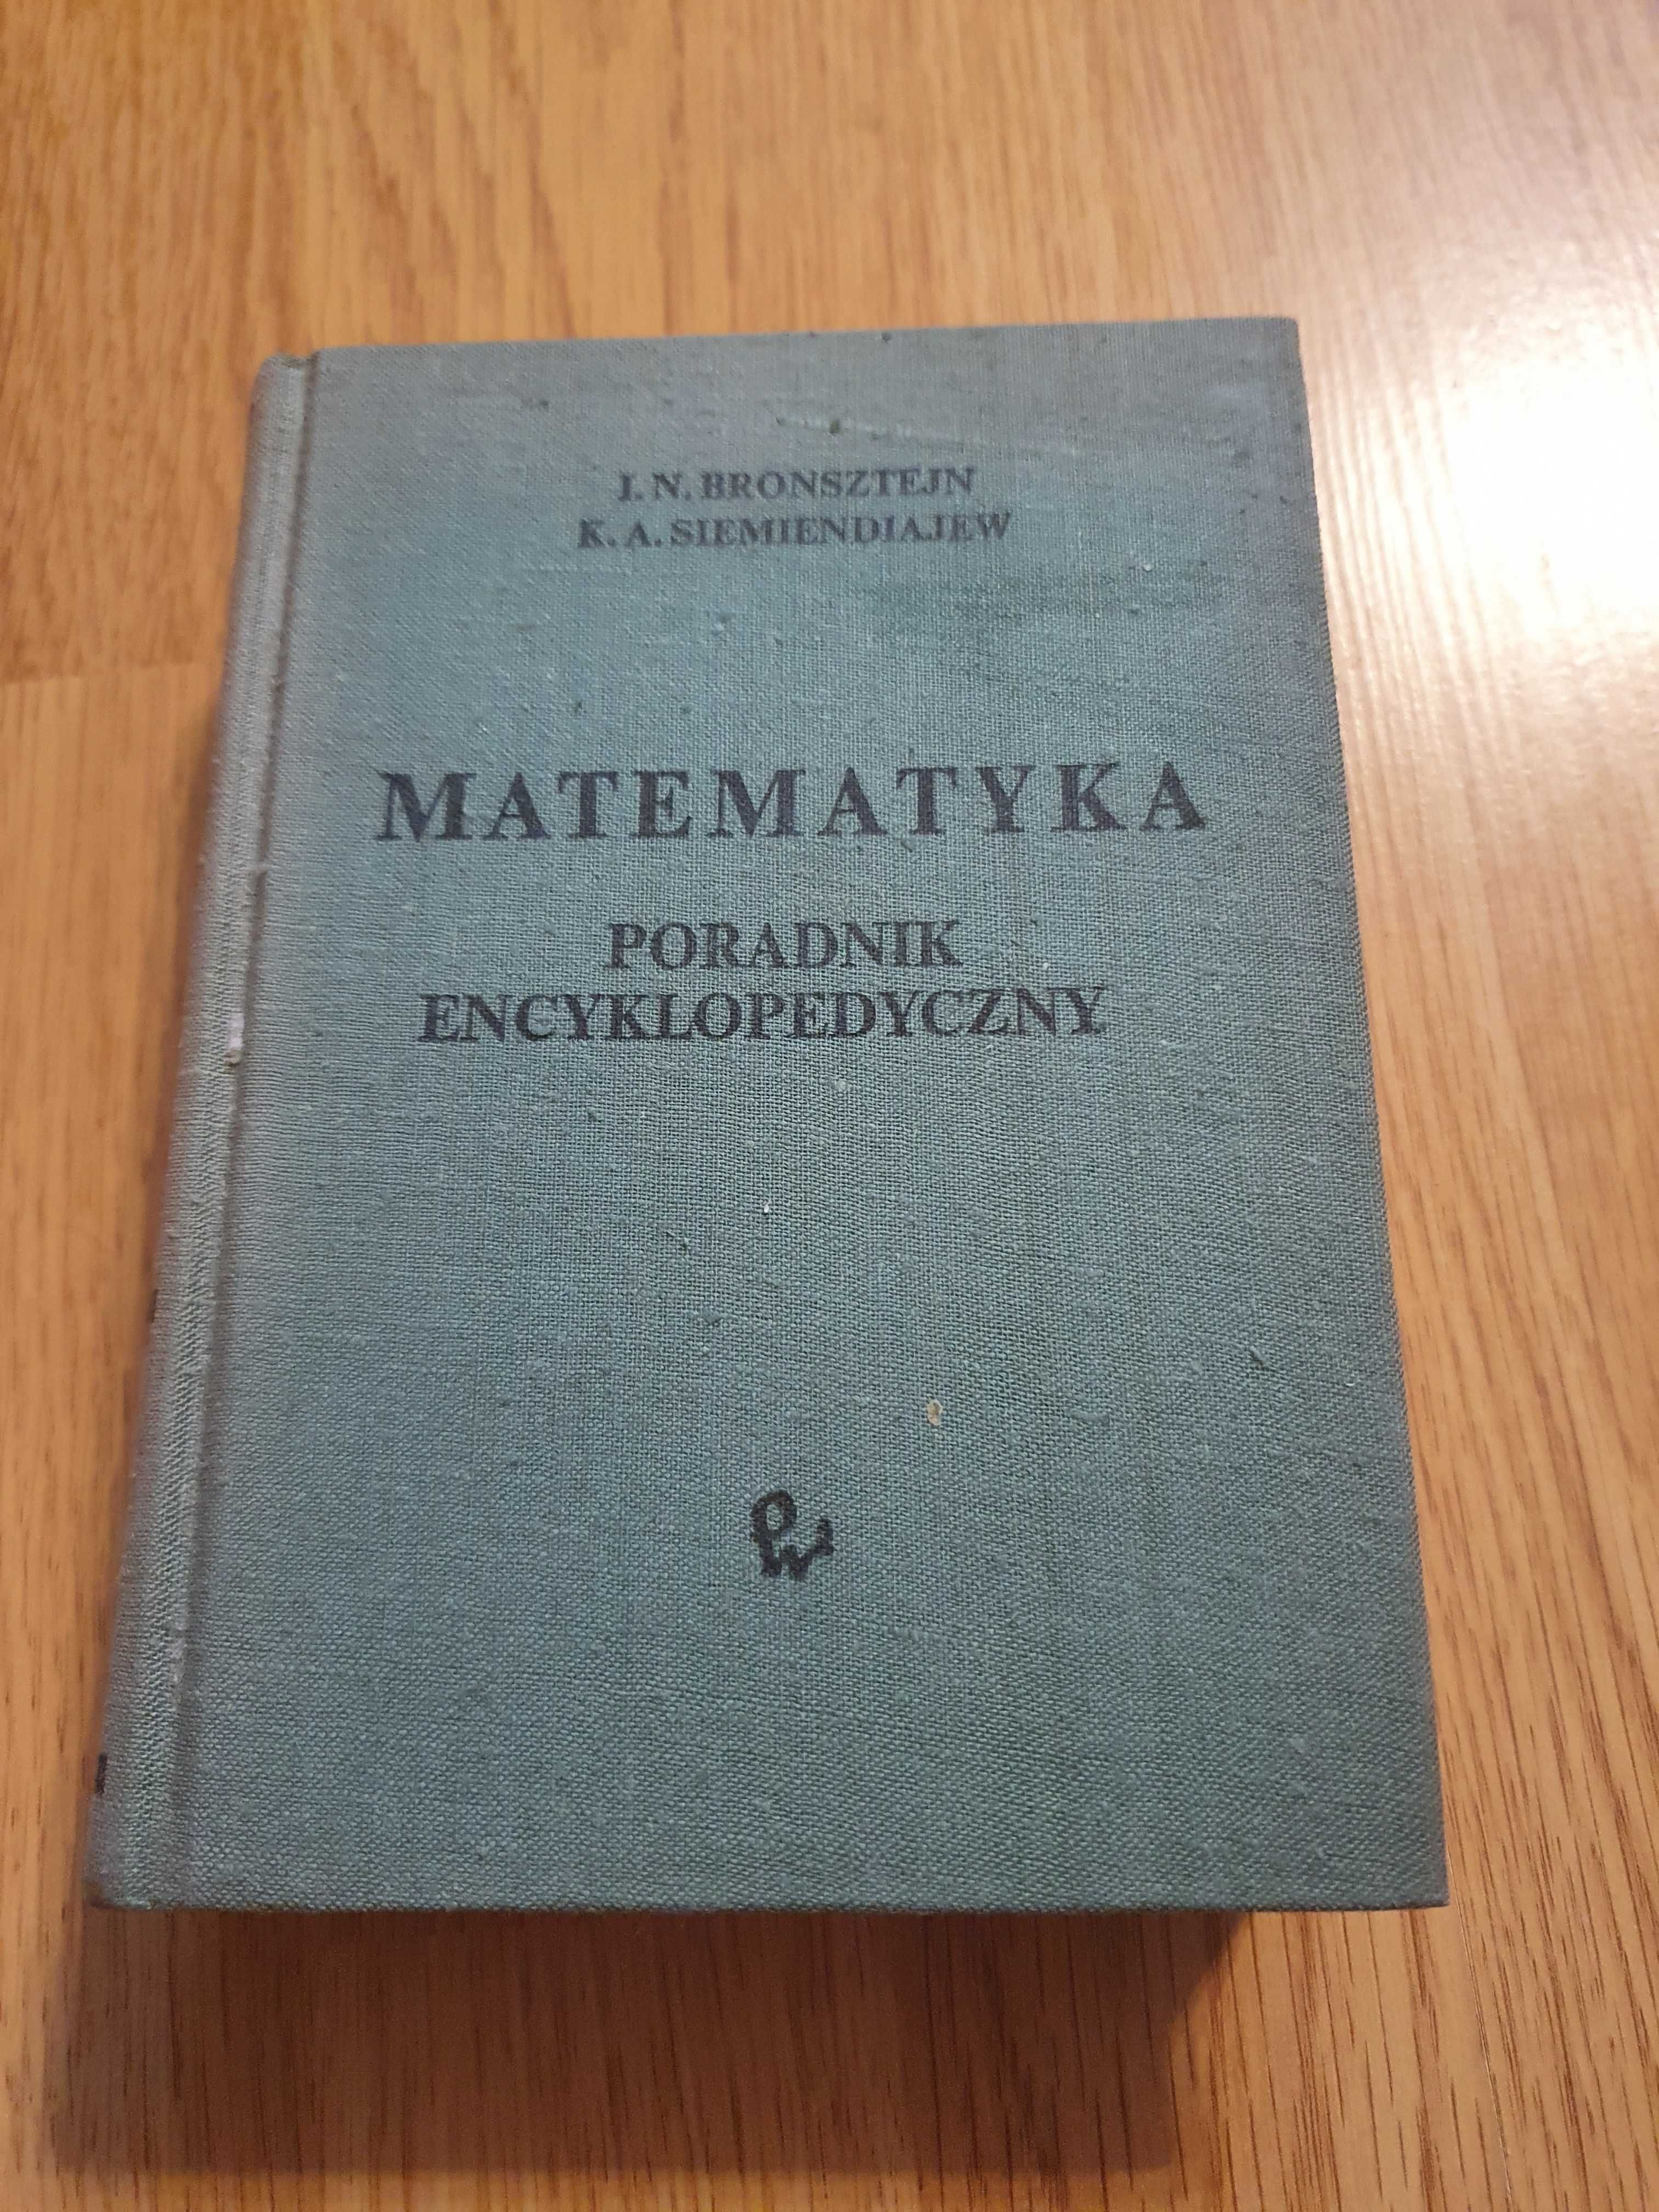 Matematyka Poradnik encyklopedyczny Bronsztejn Siemiendiajew *3